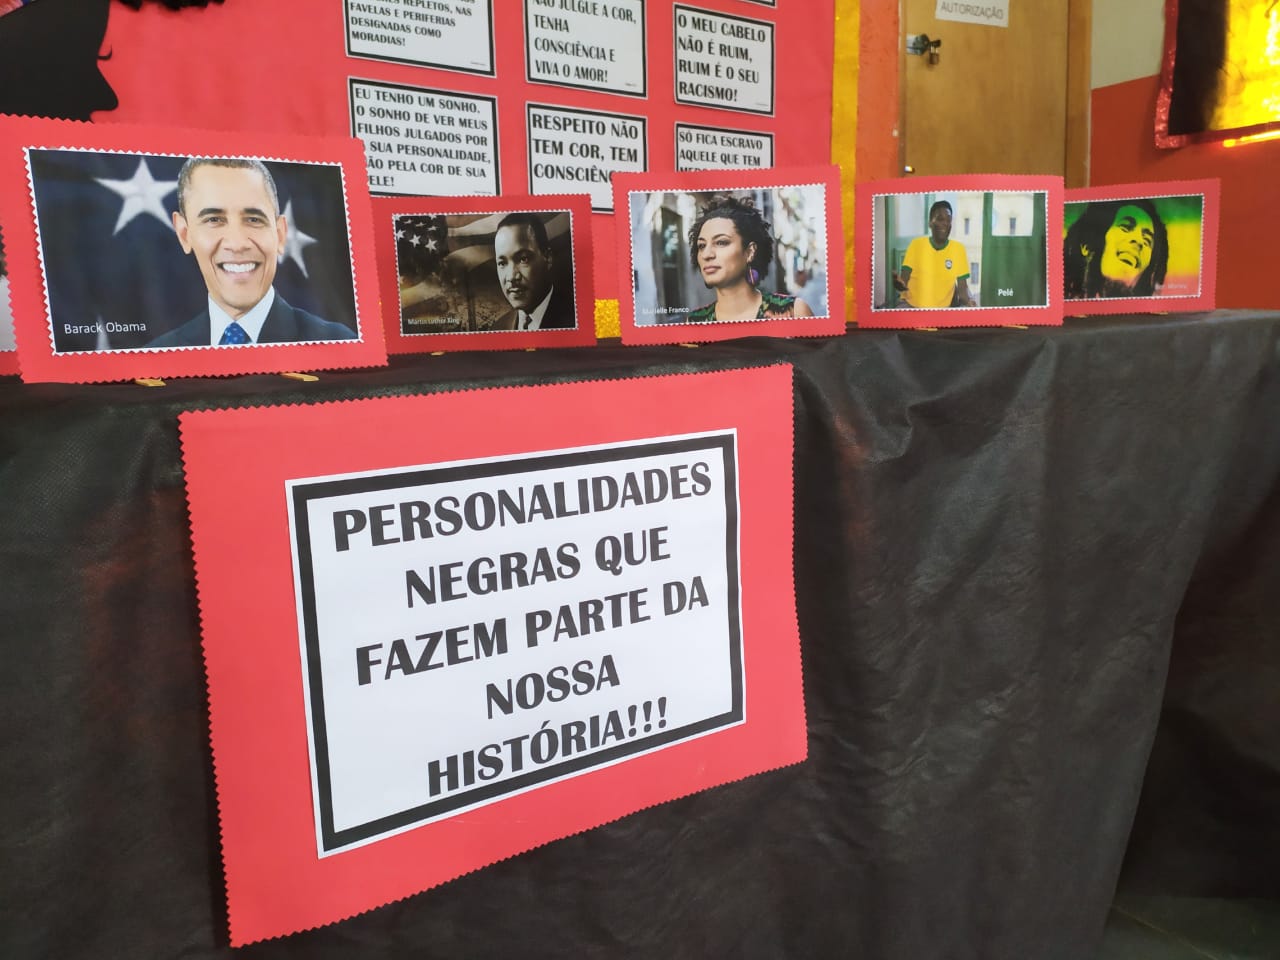 Mesa que expõe retratos de personalidades negras, na parede de fundo aparece diversas frases de desconstrução e engajamento da causa racial.